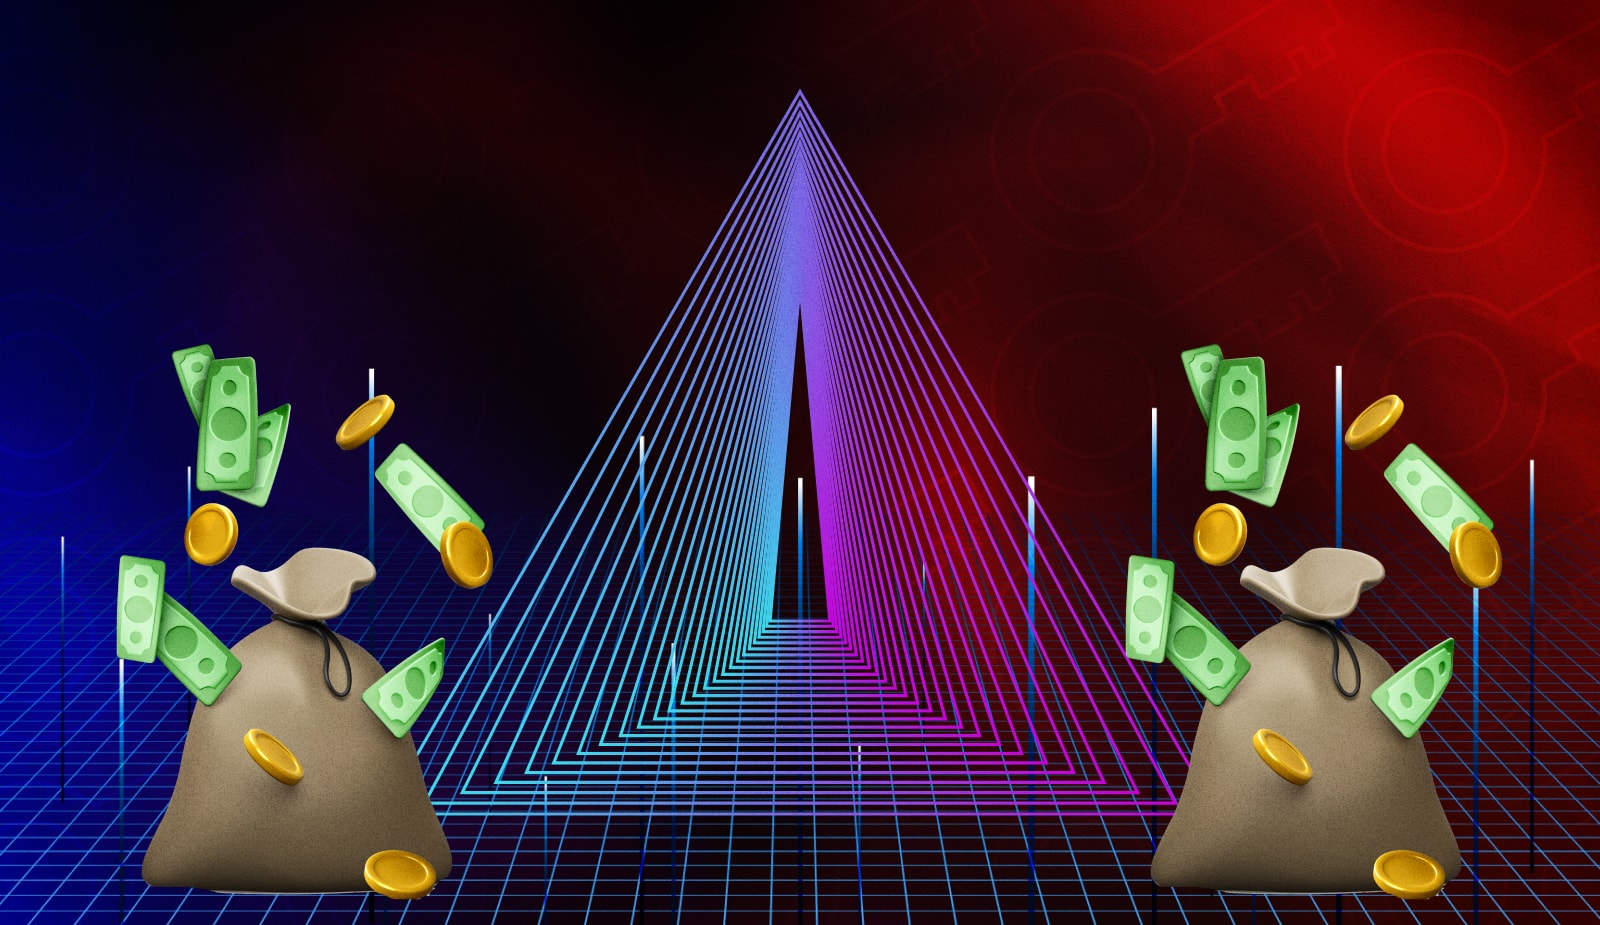 Аналитик и крипто-эксперт FatManTerra организовал фейковую крипто-пирамиду, которая собрала около $100 тысяч.